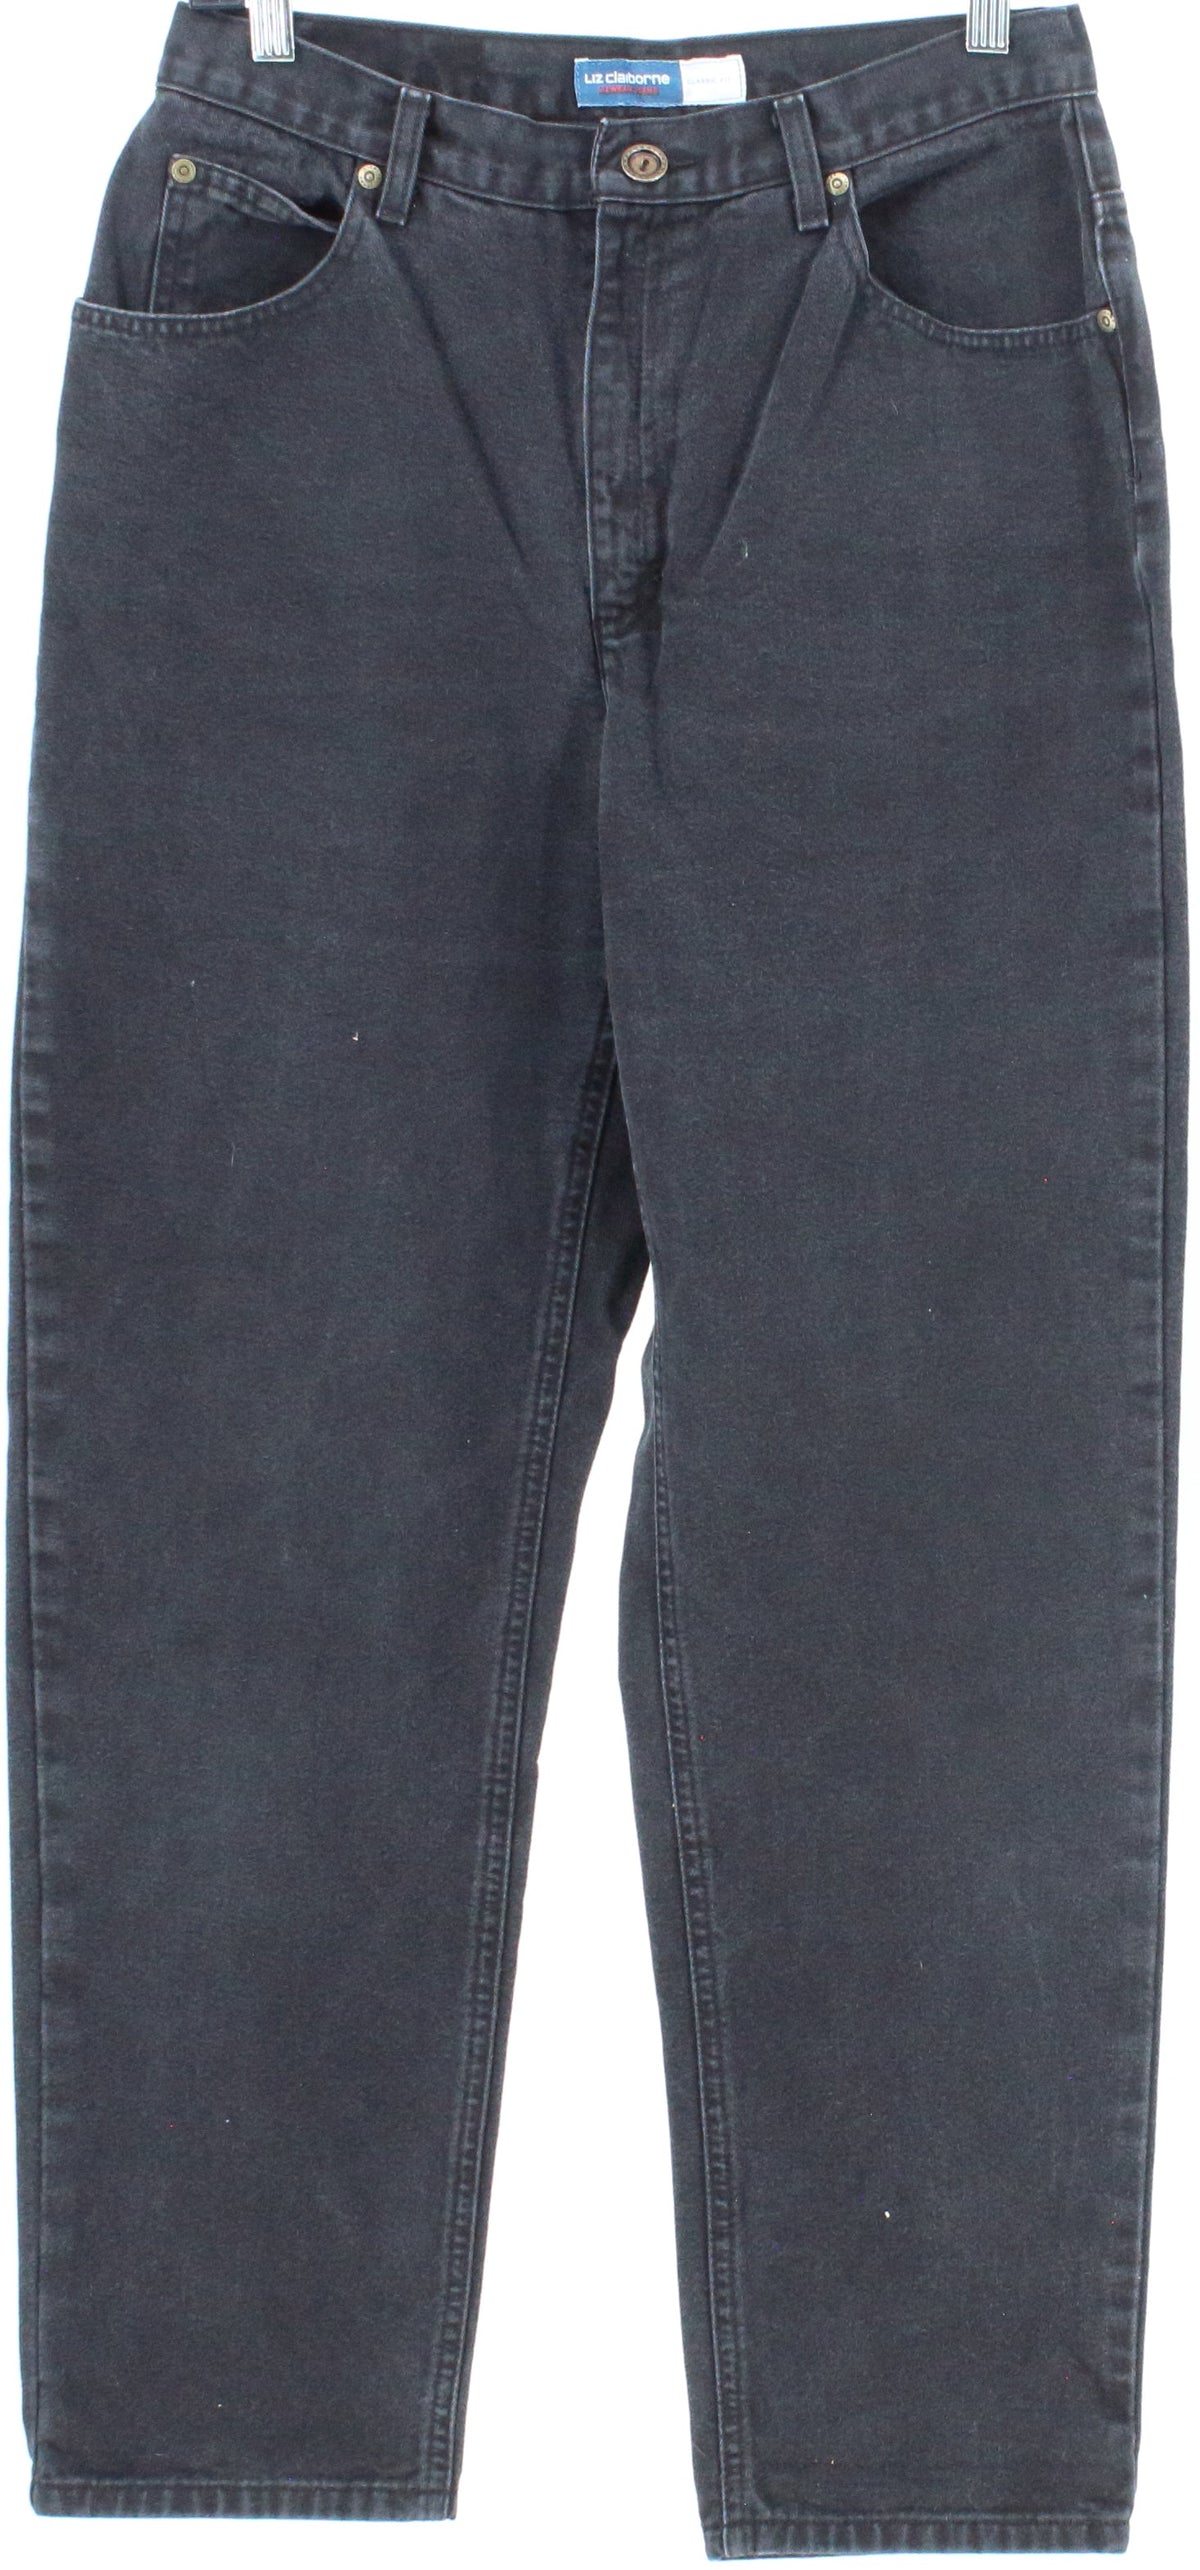 Liz Claiborne Lizwear Jeans Classic Fit Black Baggy Pants